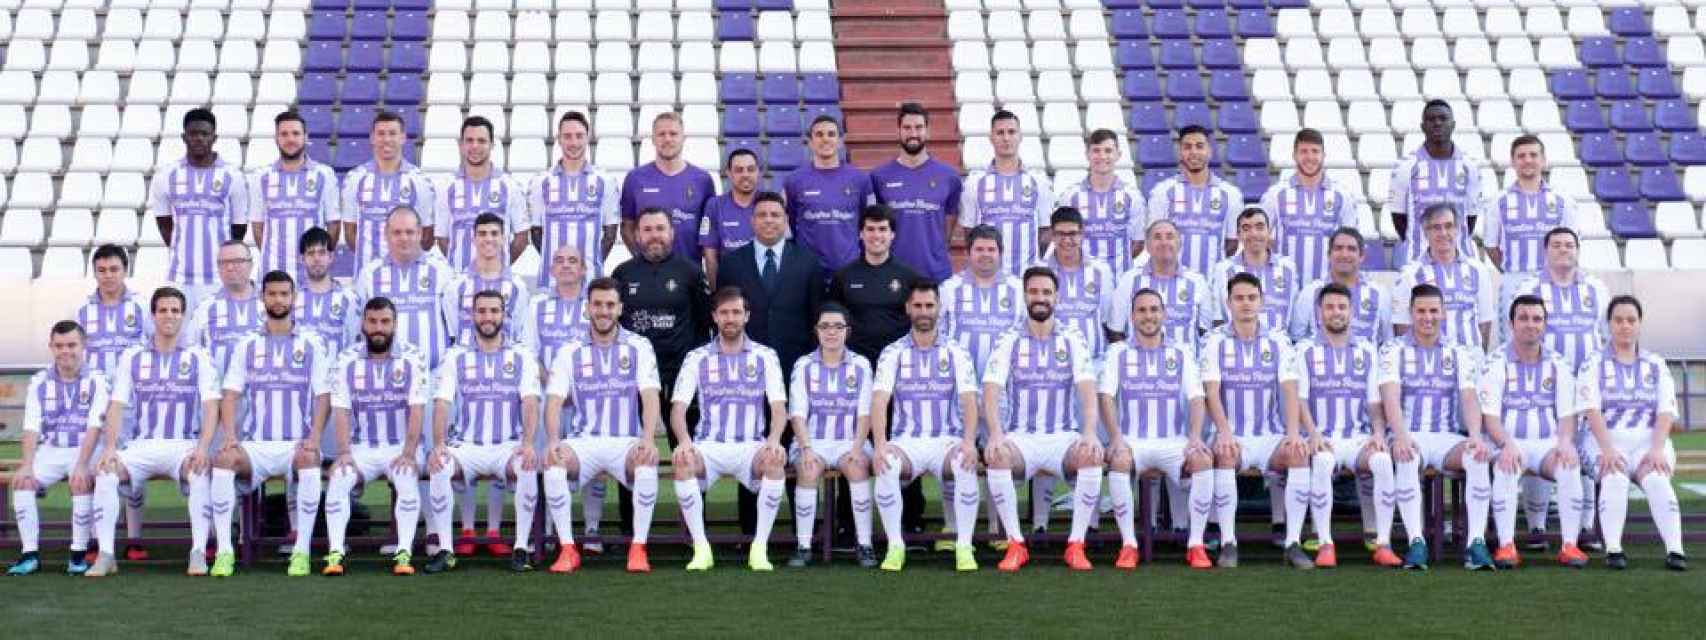 Foto oficial del Real Valladolid 2018/19